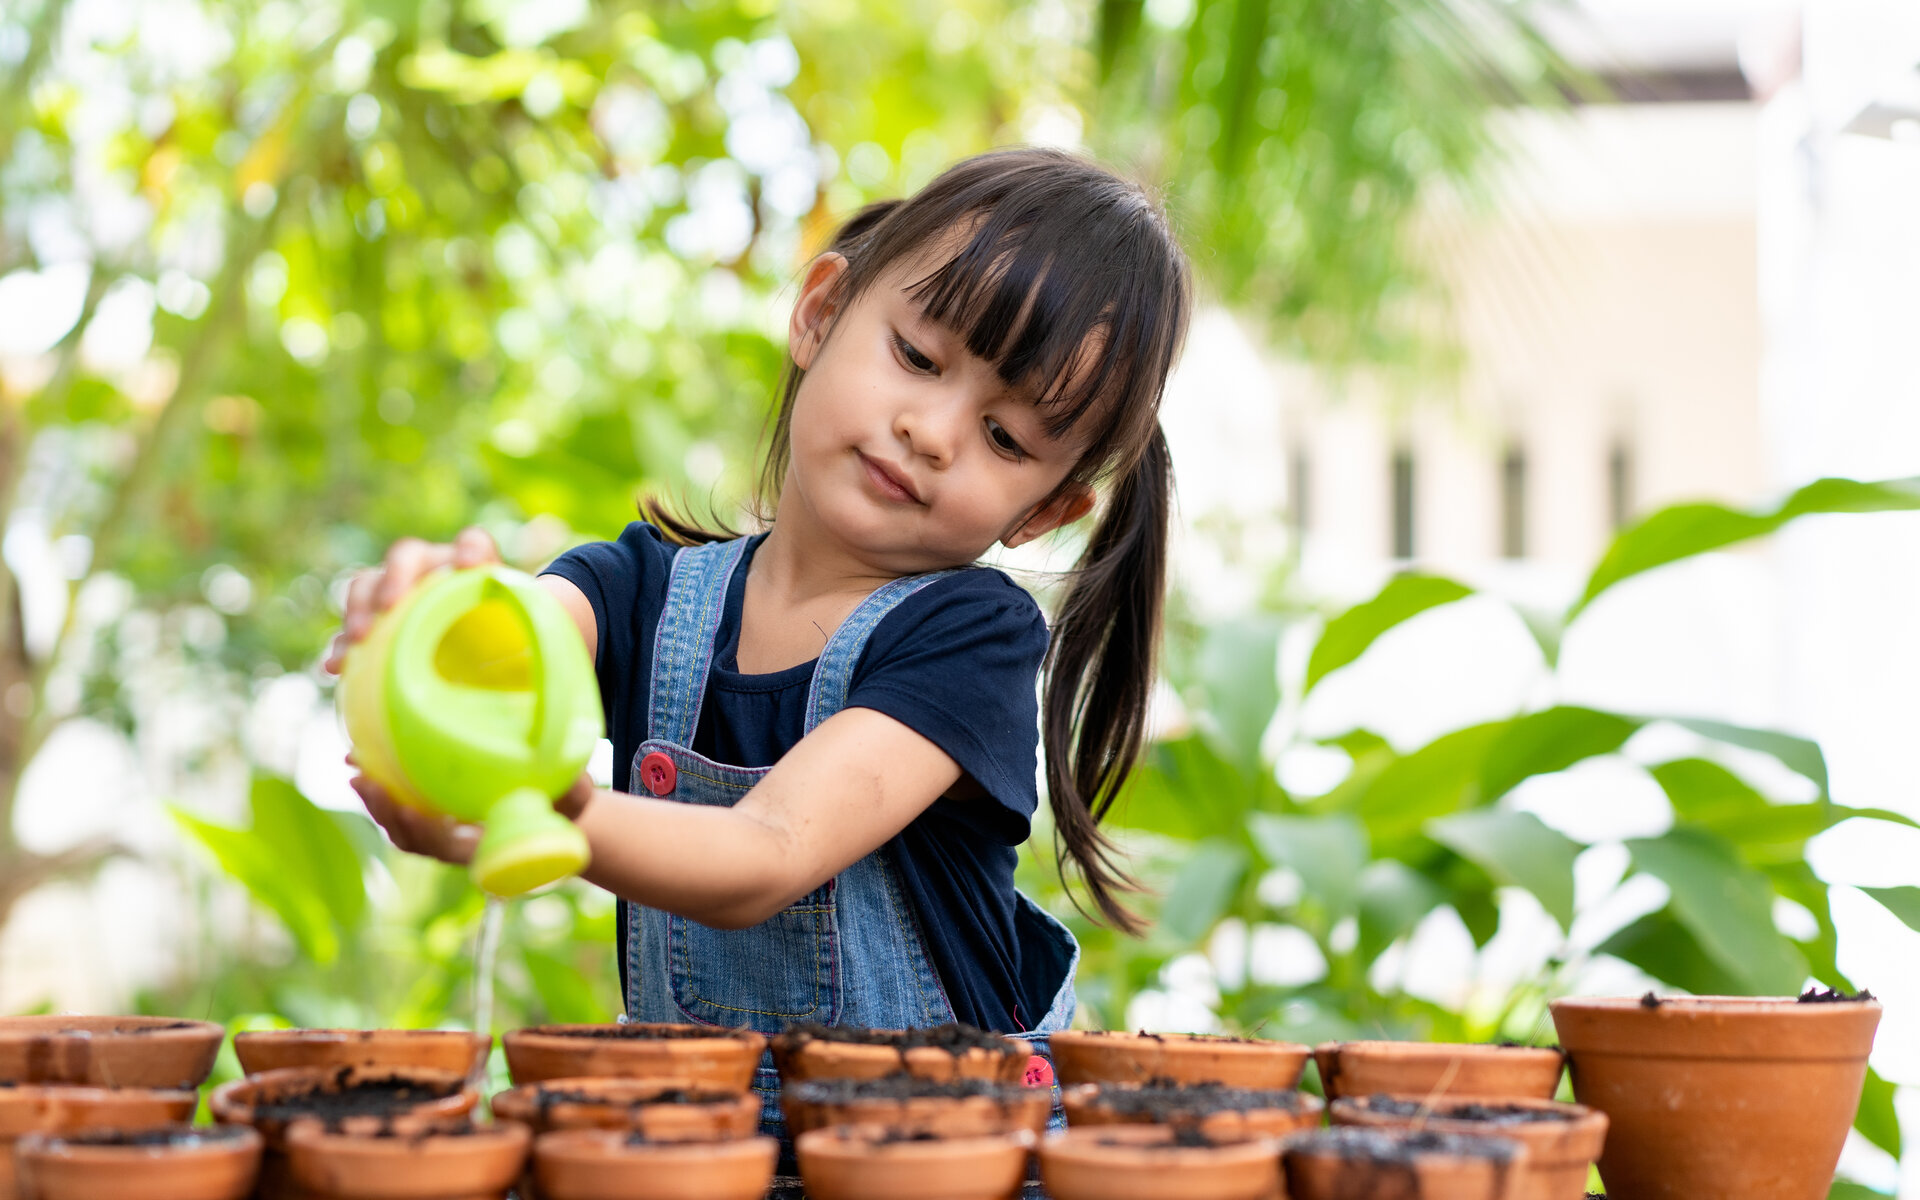 Kleines Mädchen gießt Pflanzen in Töpfen außerhalb des Hauses, Konzept der Lernaktivität für den Pflanzenanbau für Vorschulkinder